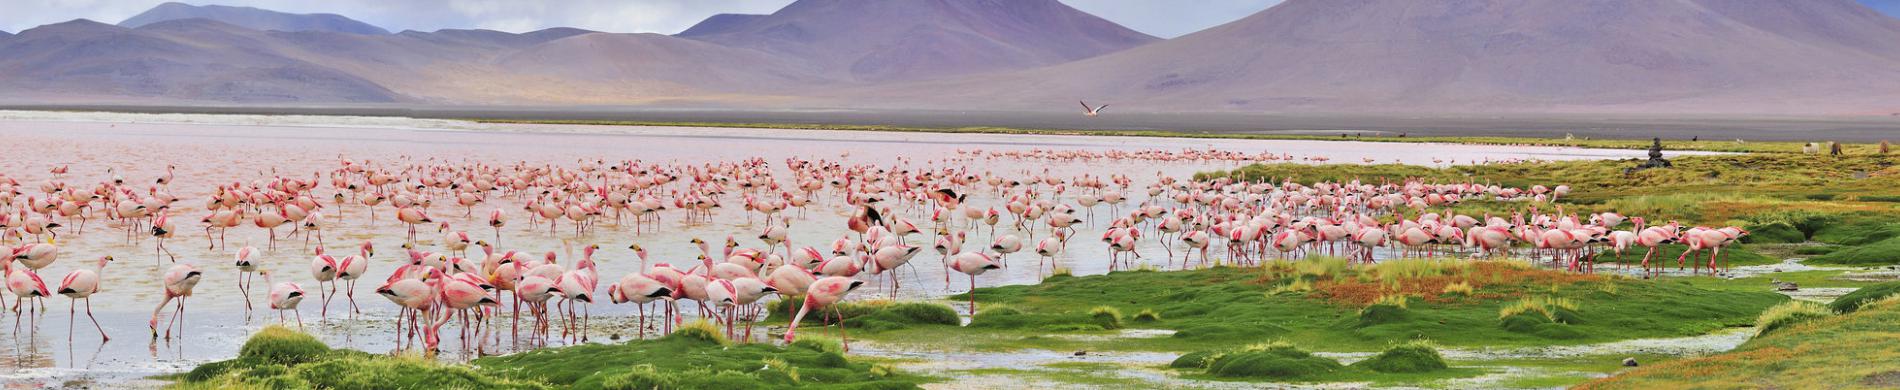 James flamingo's in Pastos Grandes Lake in Bolivia